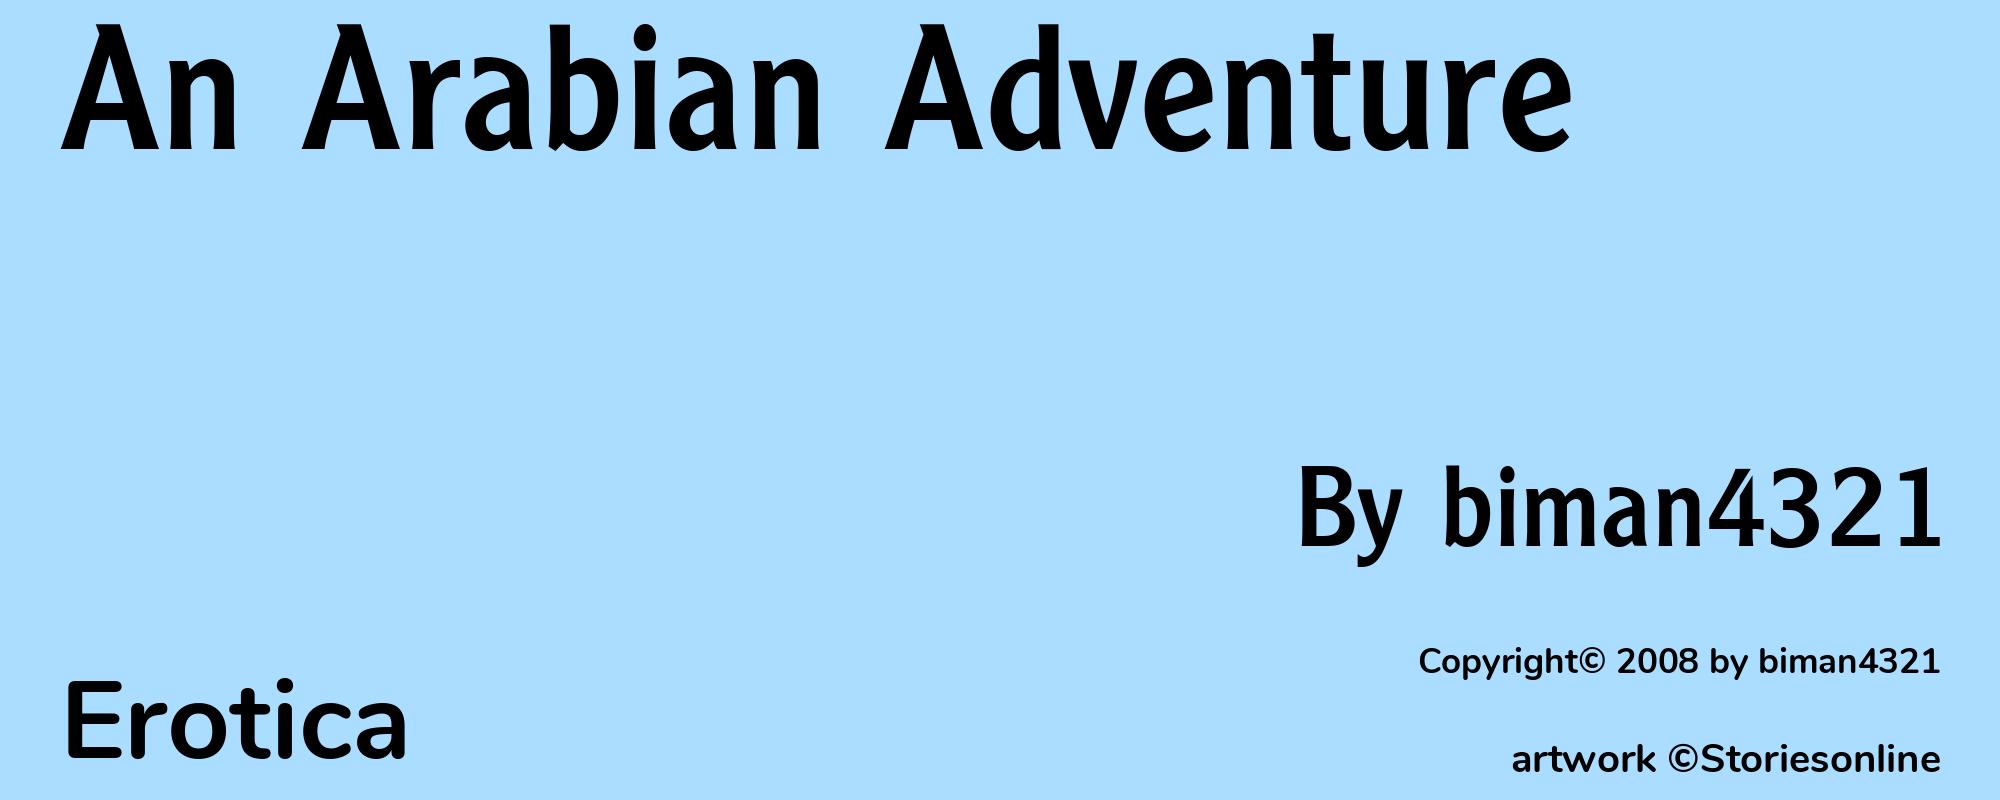 An Arabian Adventure - Cover